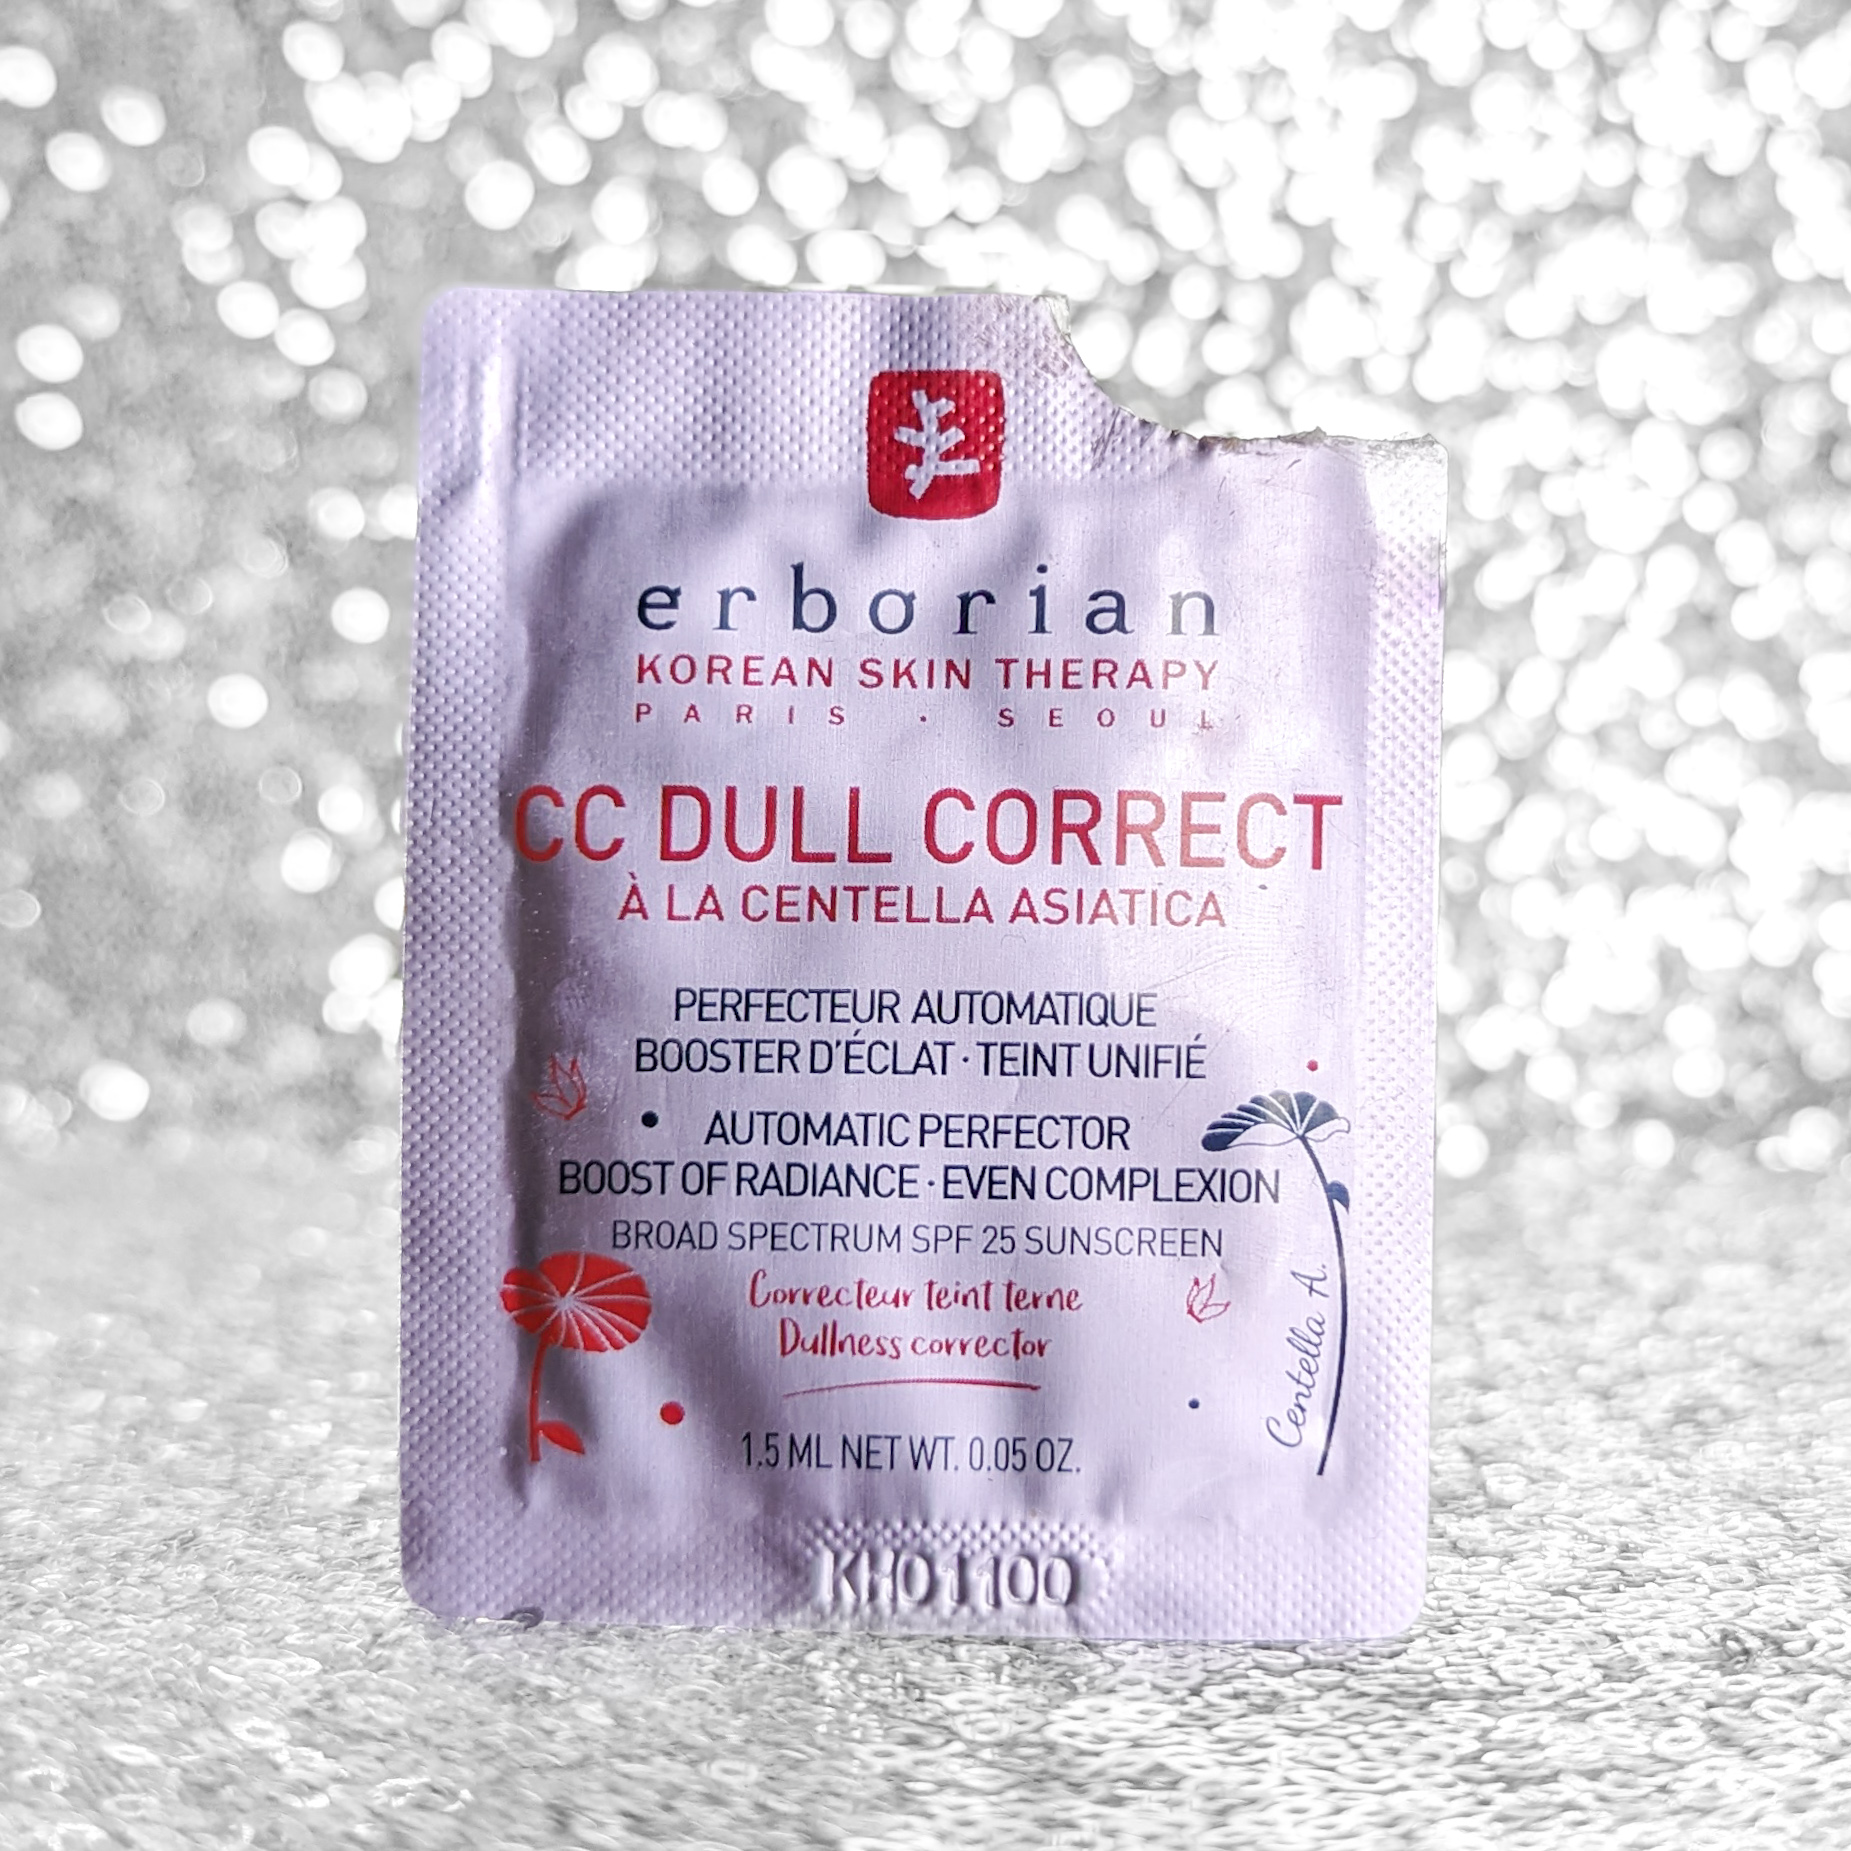 Erborian CC Cream: Огляд популярного коригувального крему для обличчя